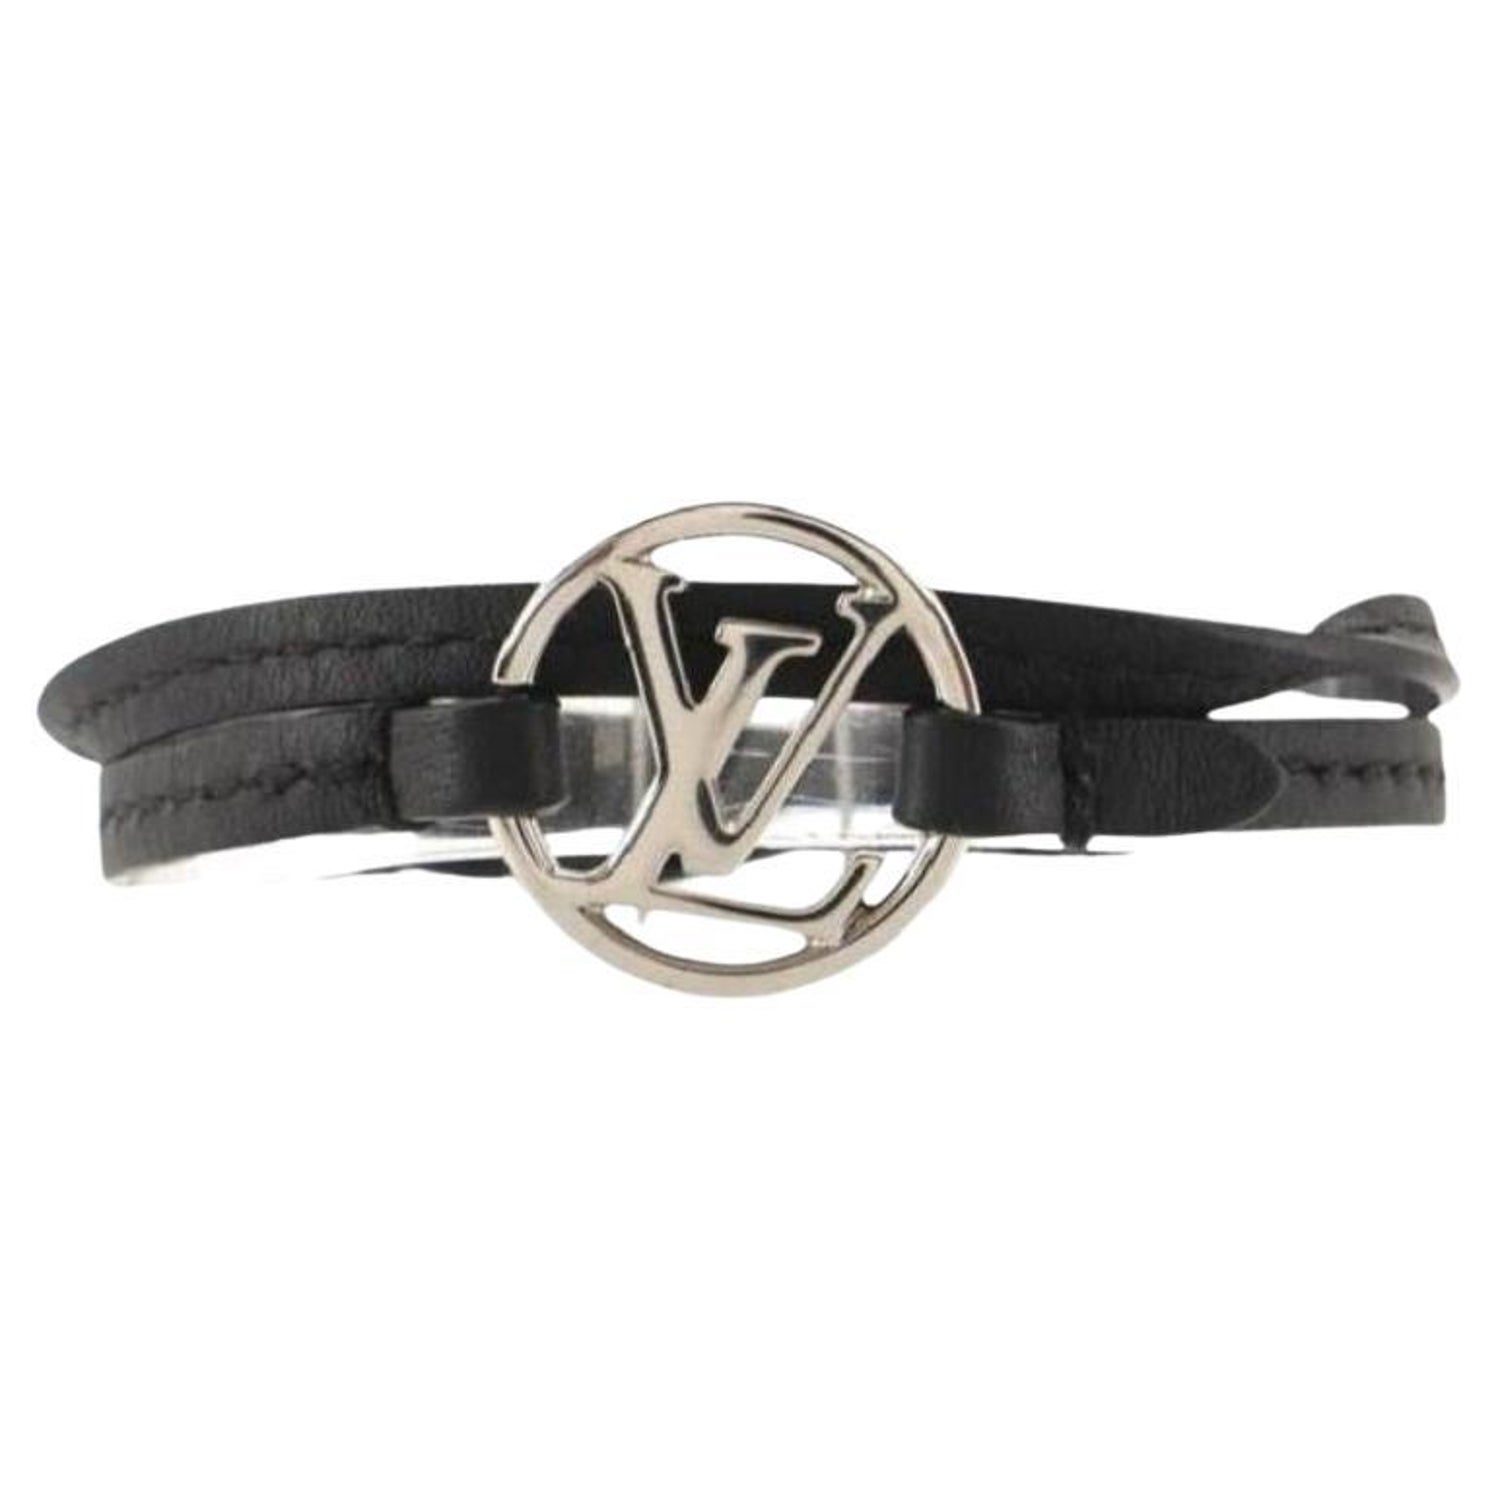 Louis Vuitton Keep It Double Canvas Silver Tone Wrap Bracelet